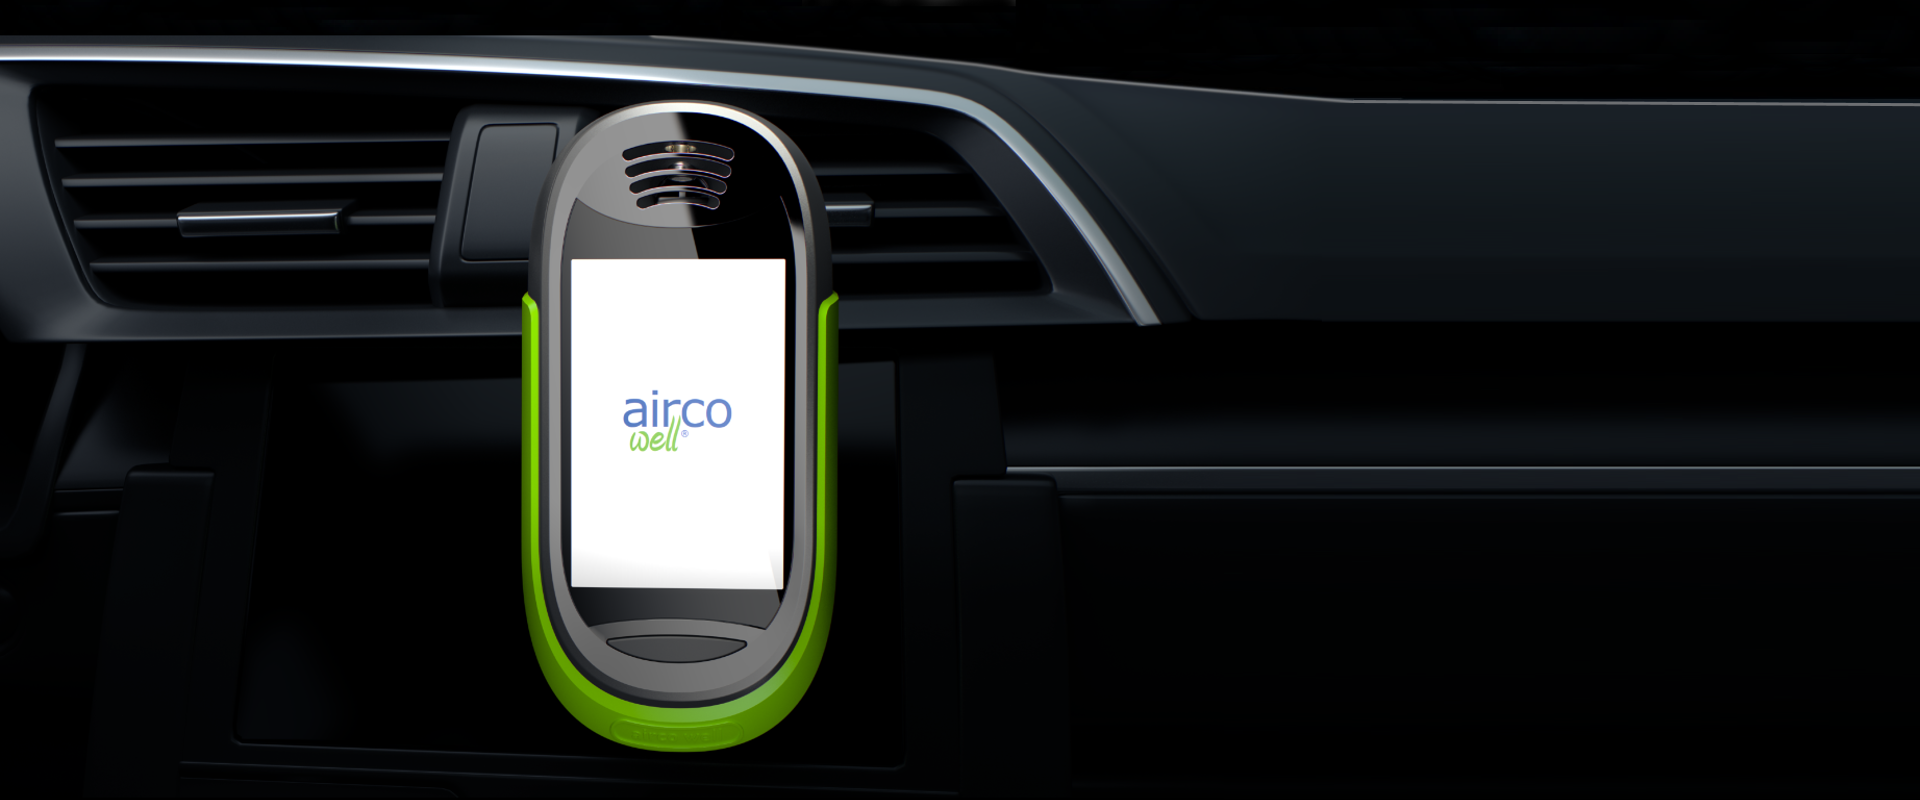 airco well® Sensörü